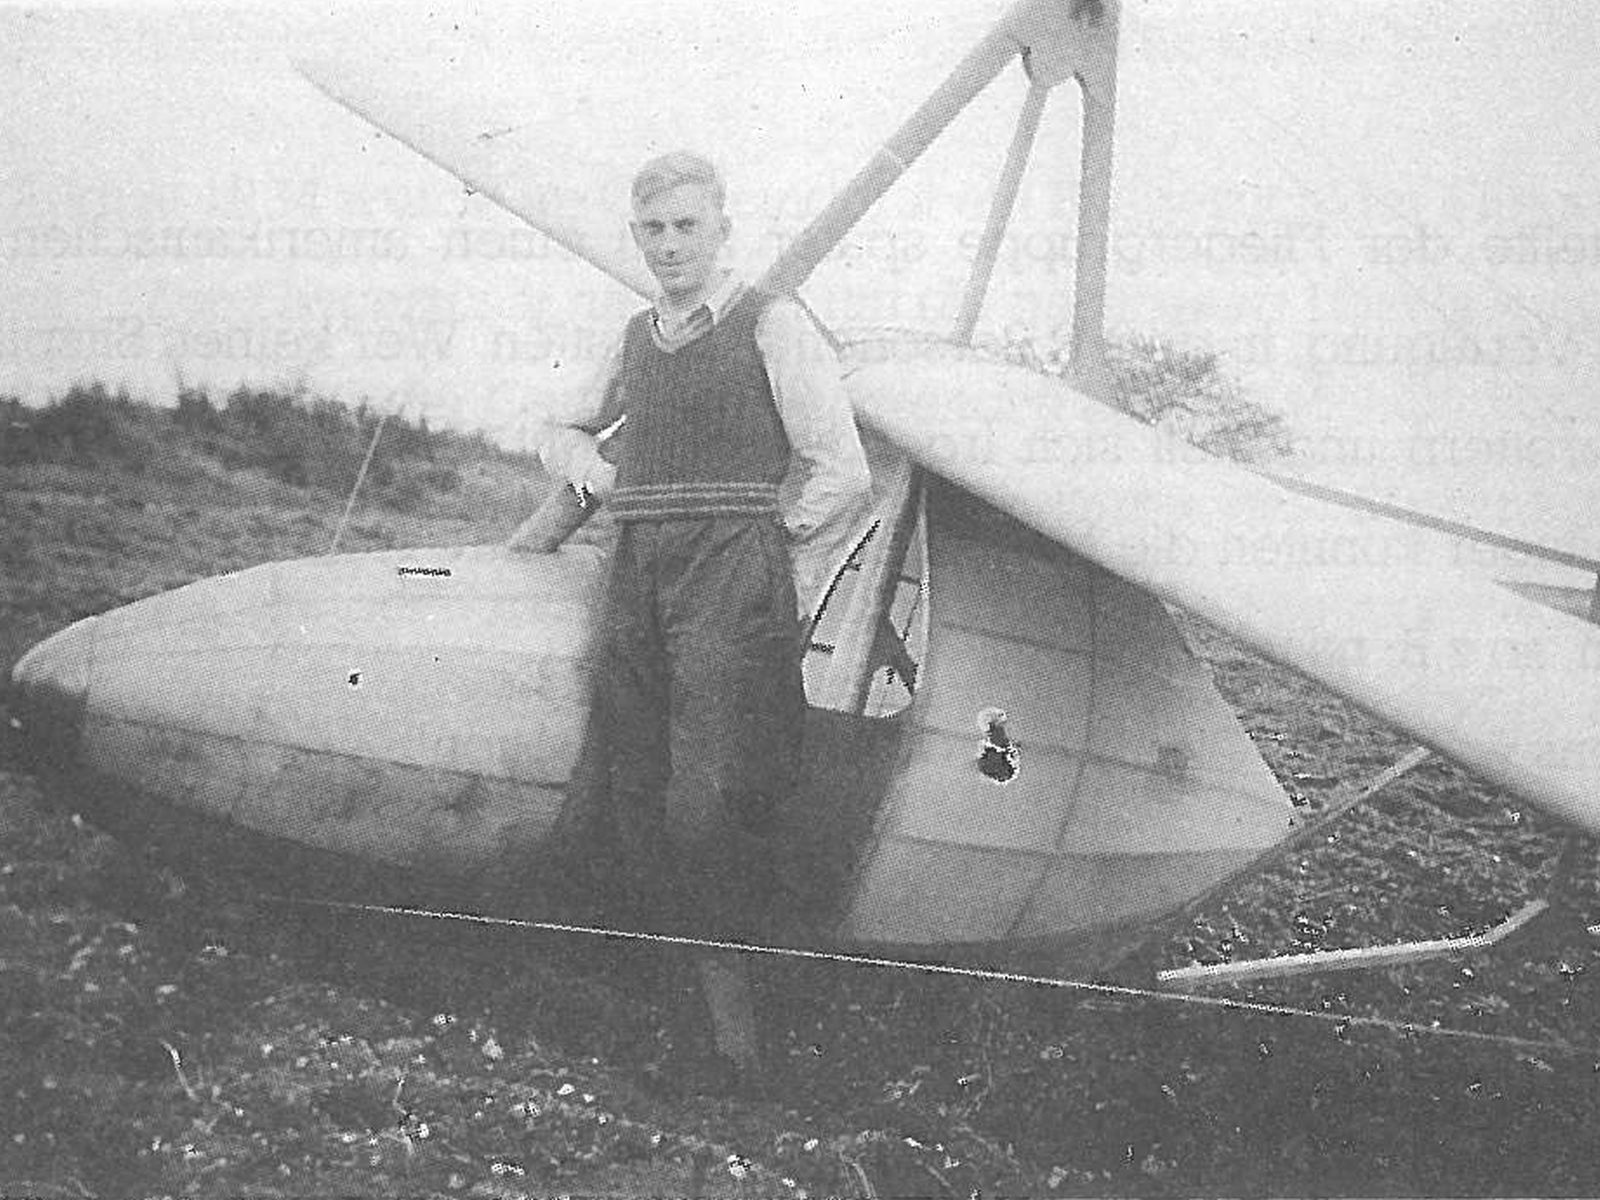  Schopflocher Skizzen Eugen Schwab vor dem Flugzeug - Bild wird mit einem klick vergrößert 